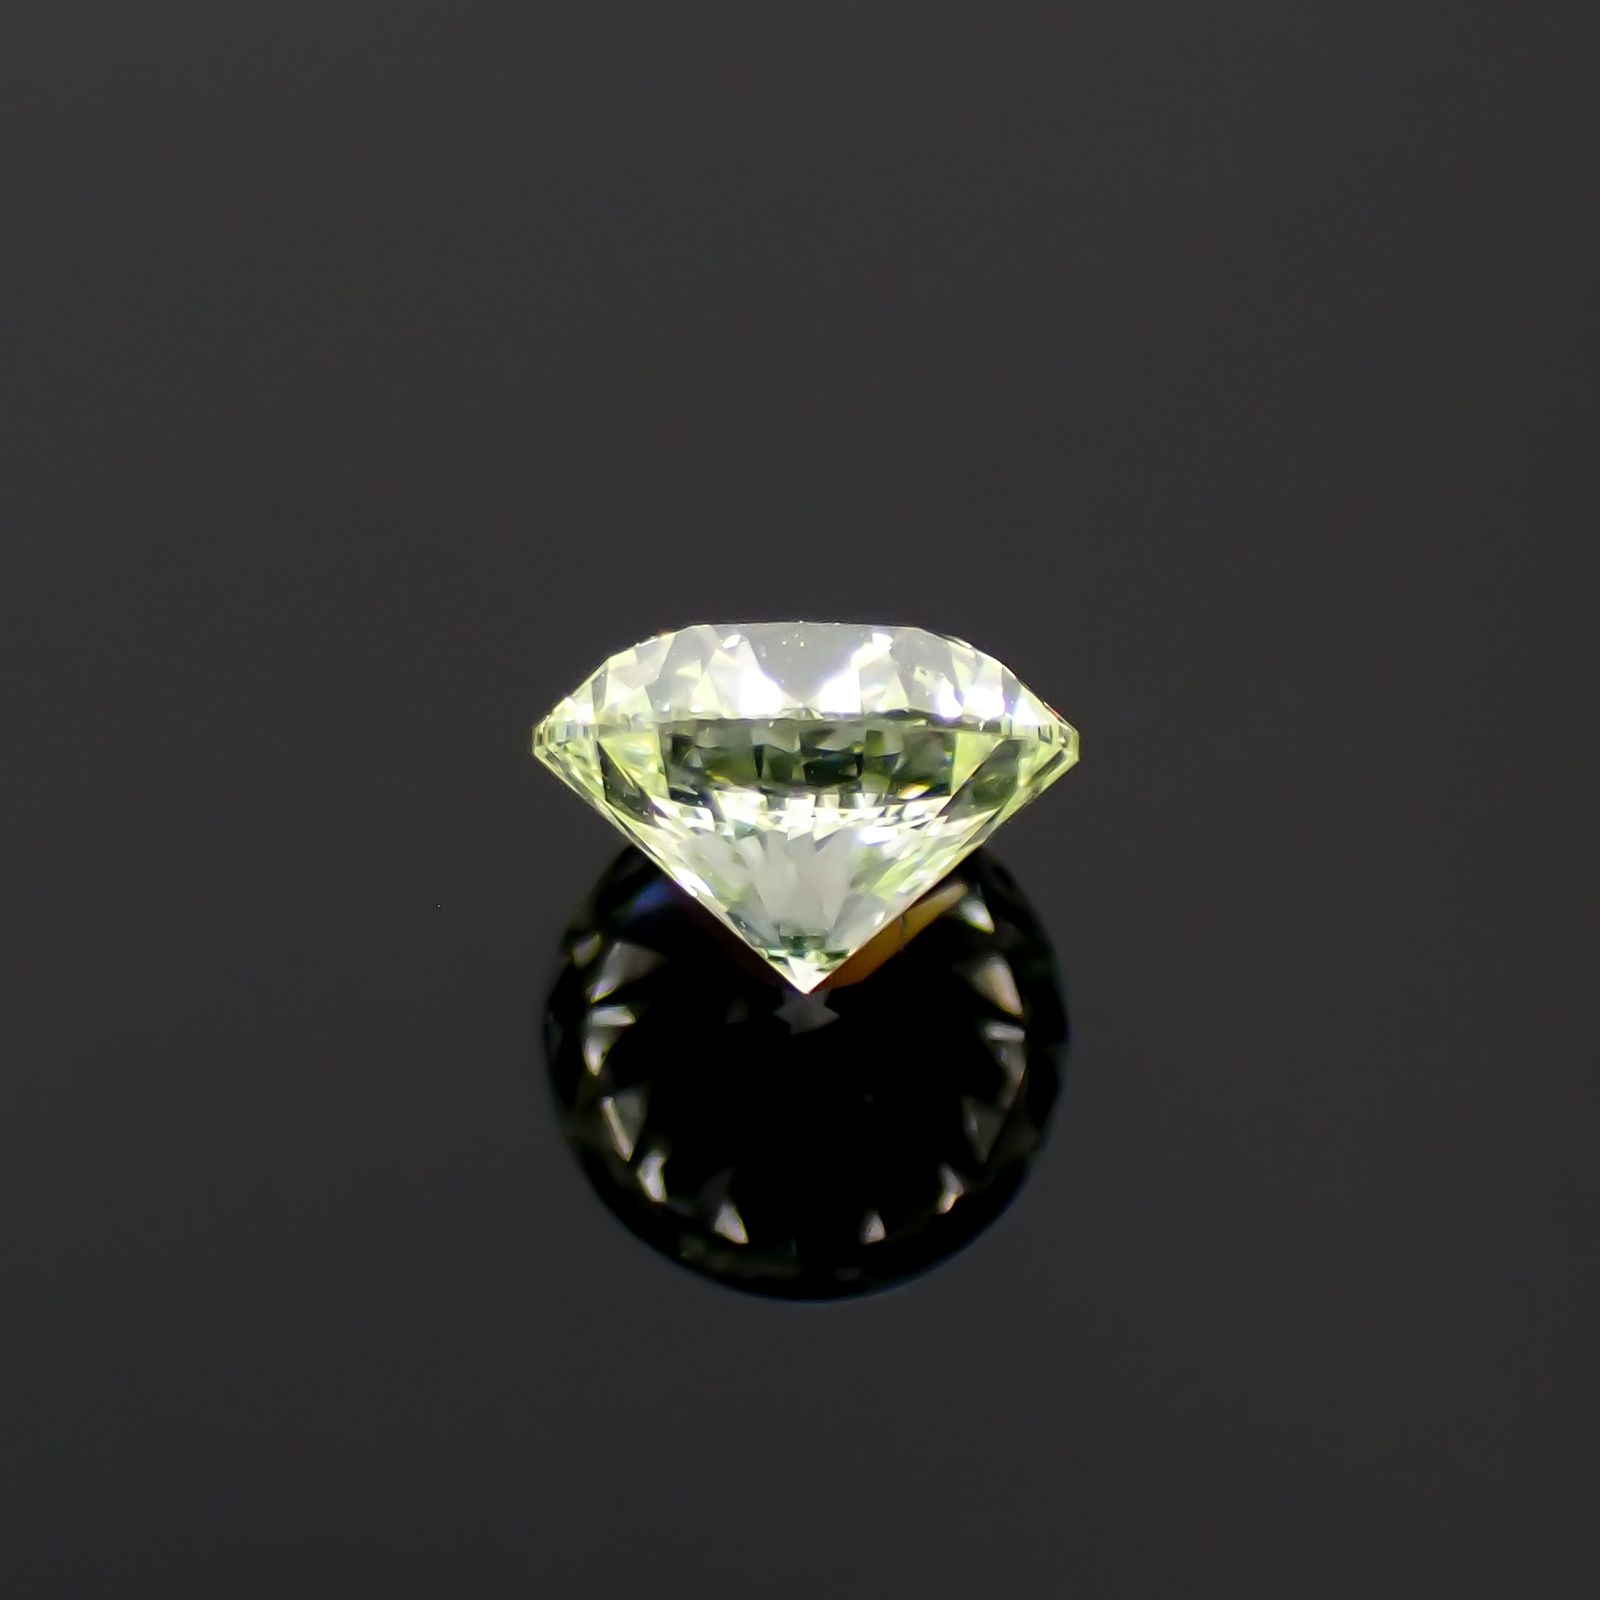 グリーンダイヤモンド 無処理 VS-1(VERY LIGHT YELLOW GREEN) 0.402ct 